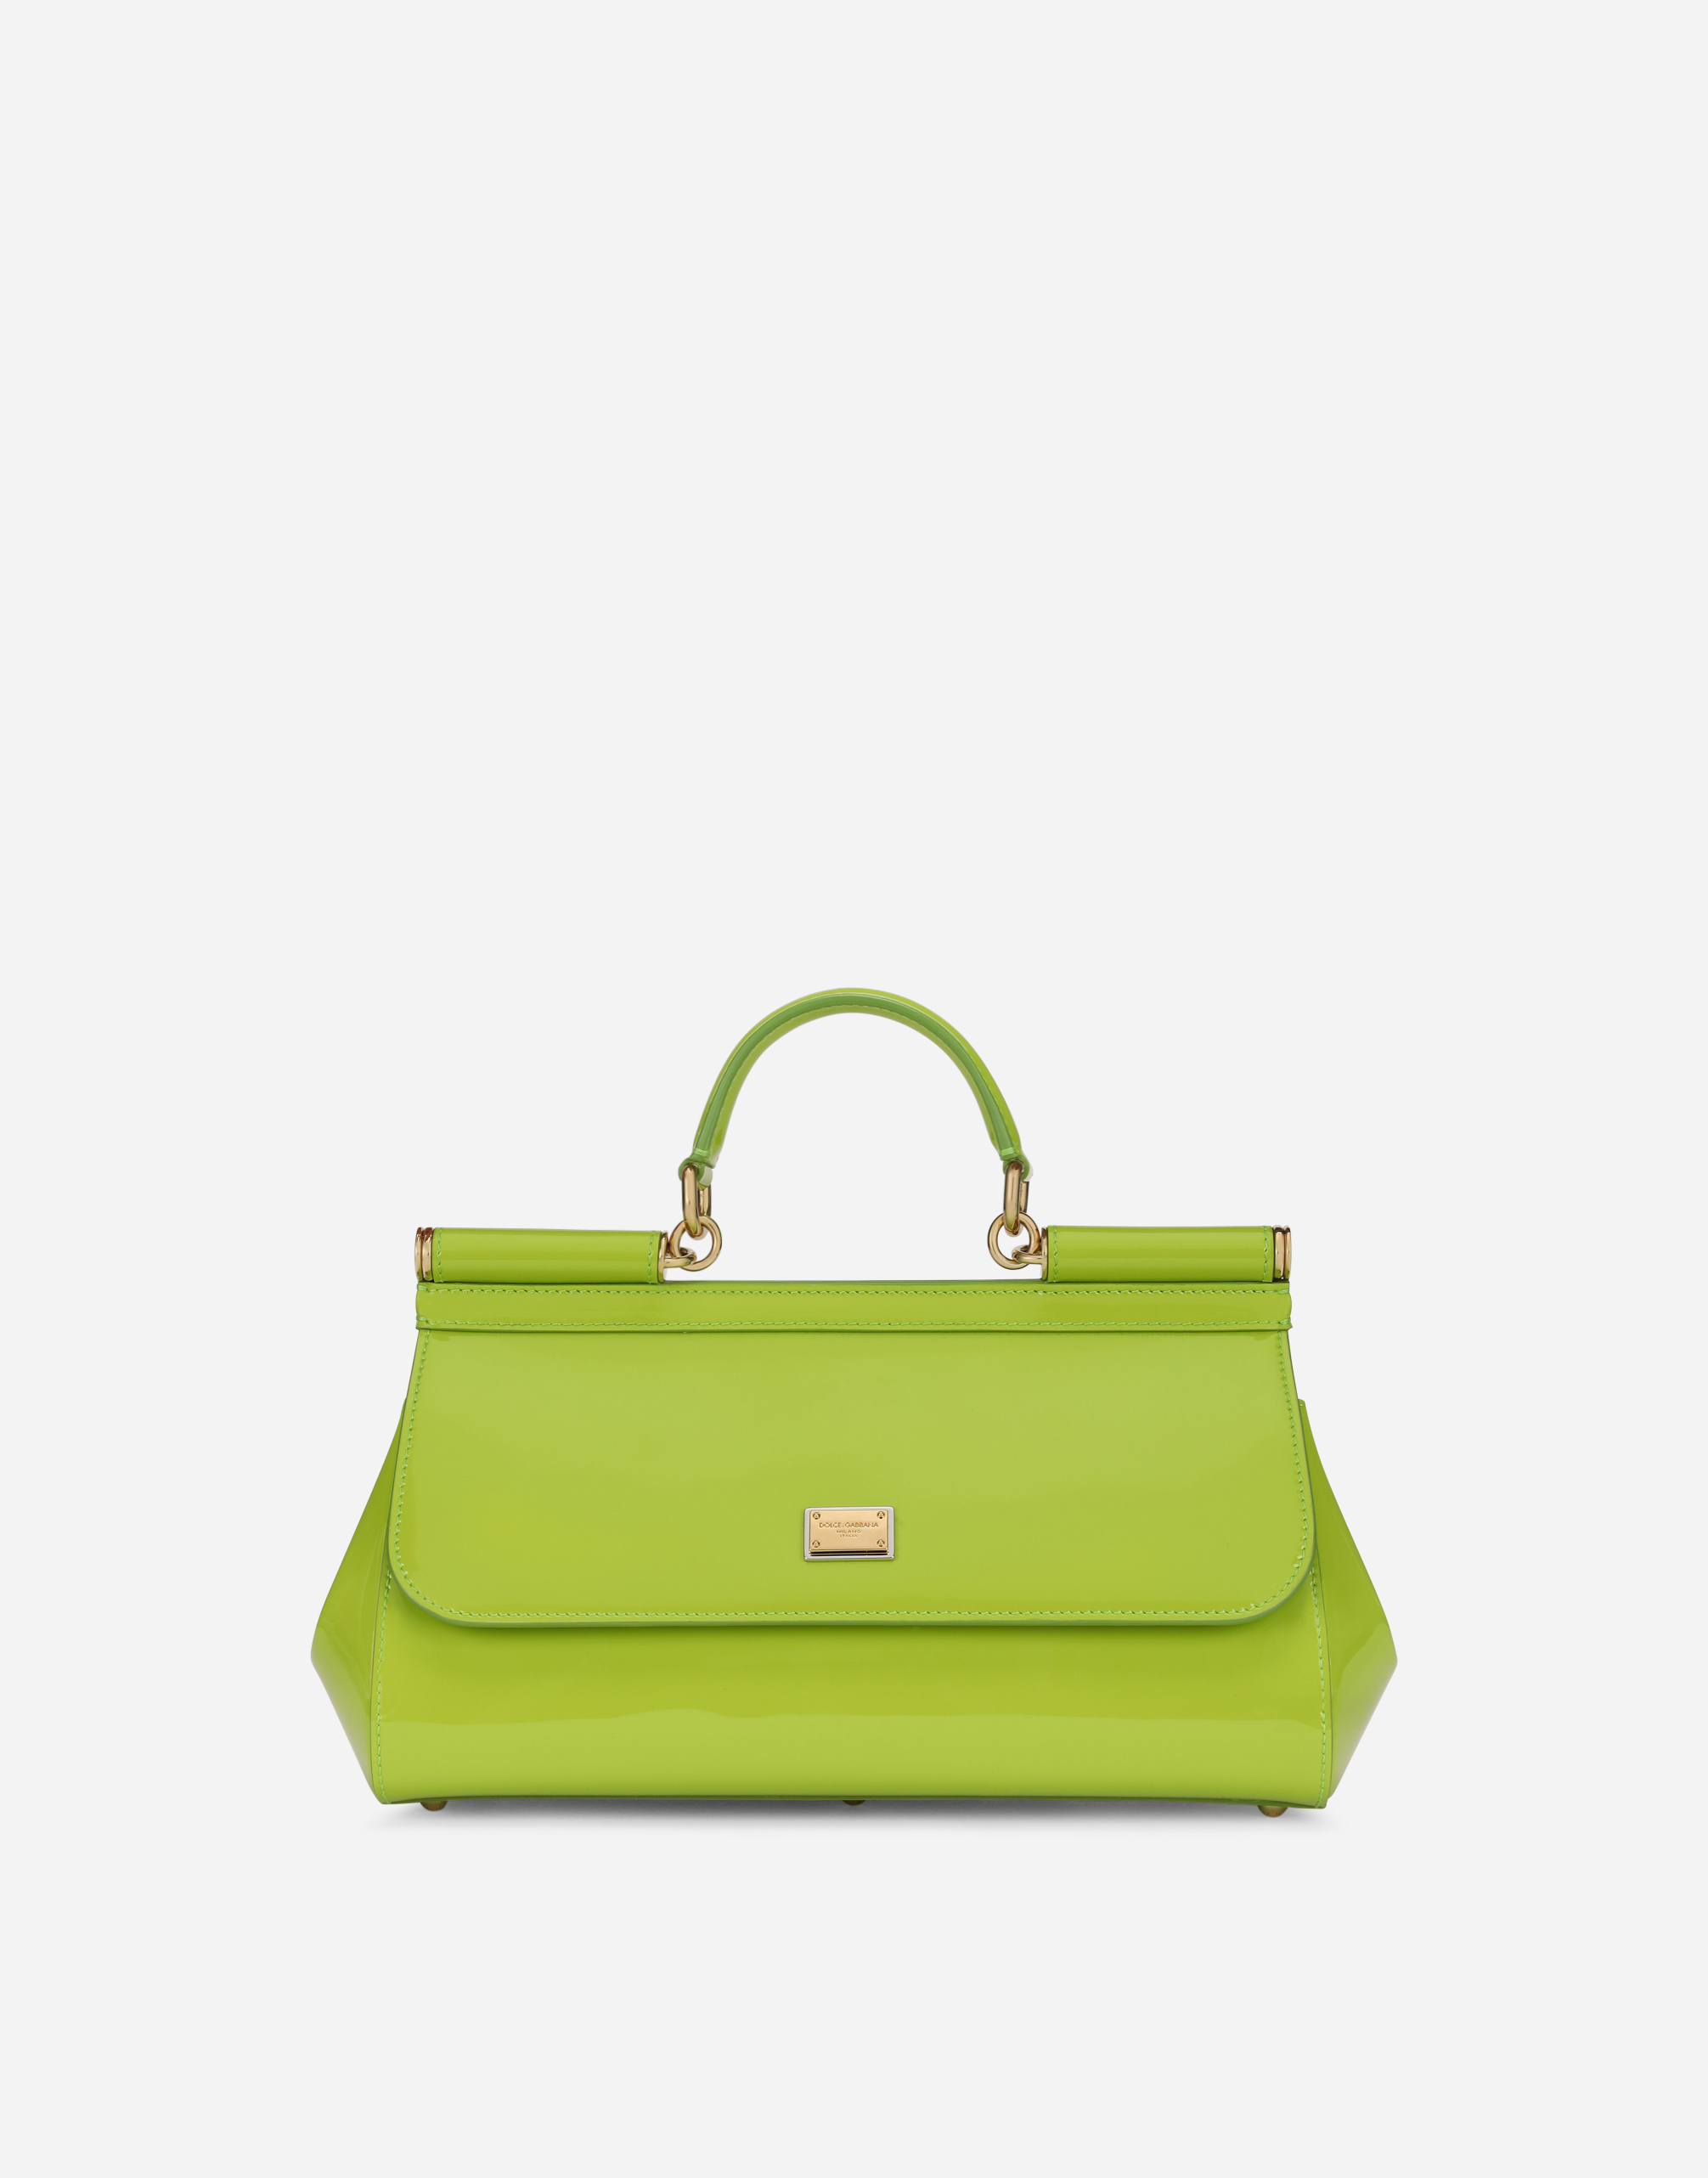 Dolce box handbag in Multicolor